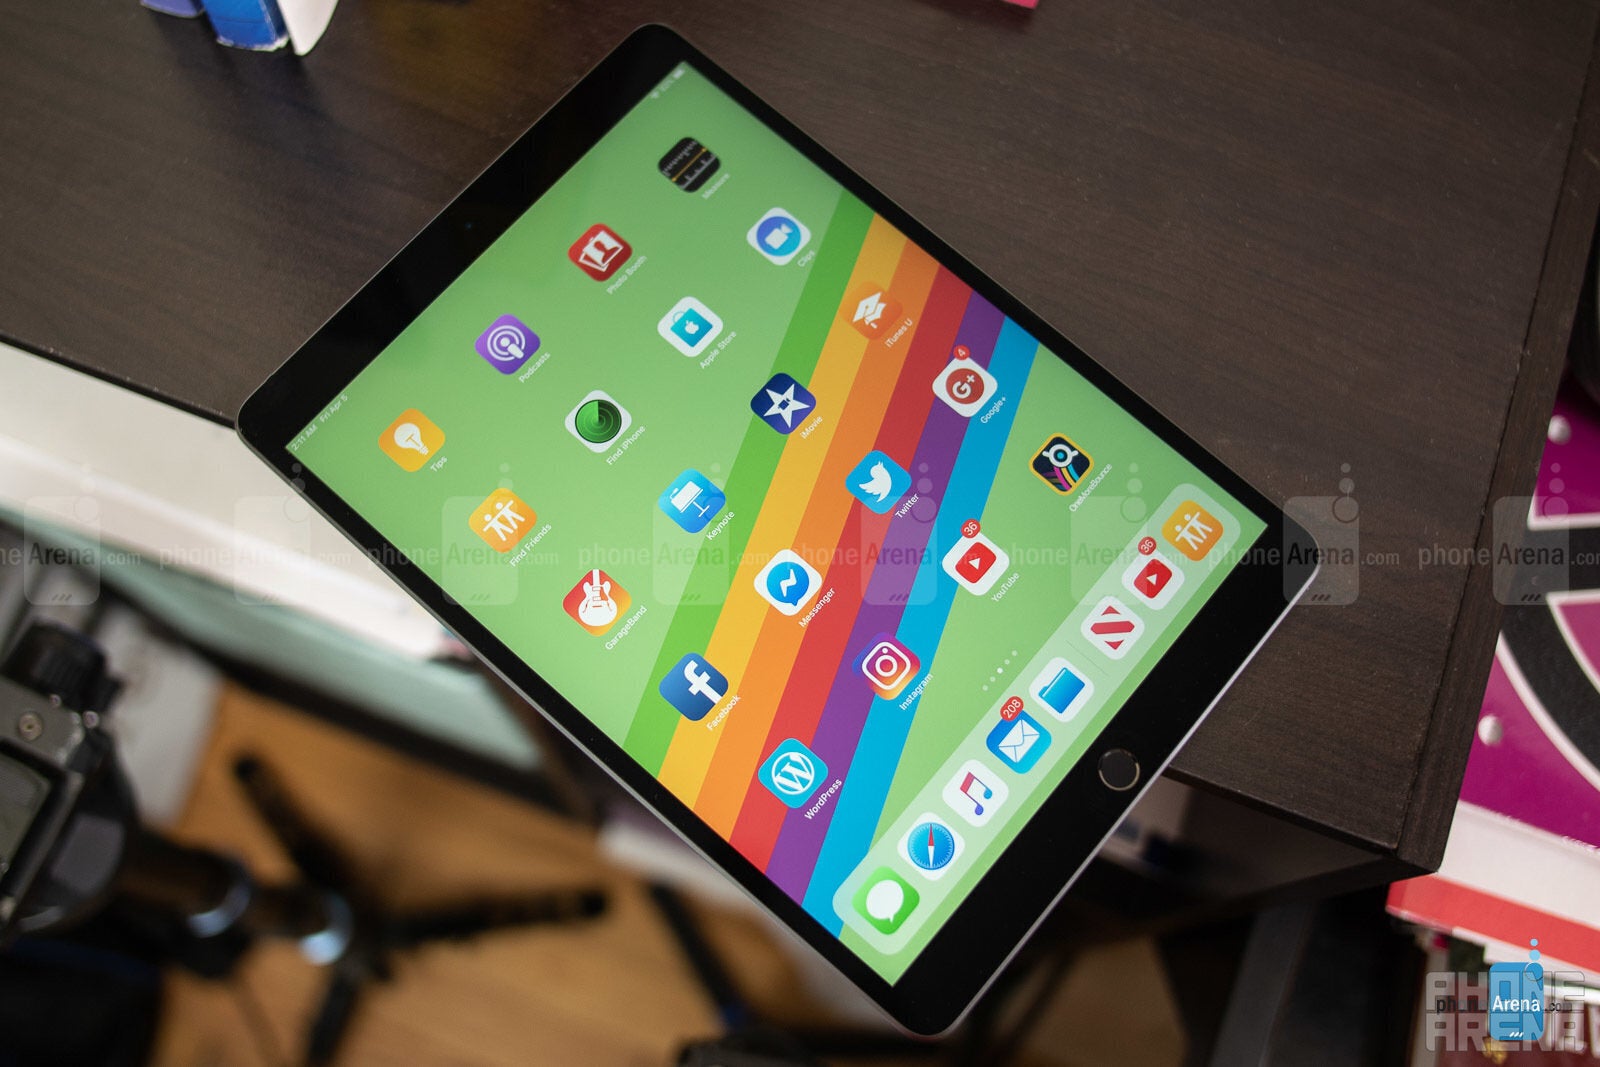 Apple iPad mini 5 (2019) vs iPad mini 4 (2015), what's new - PhoneArena